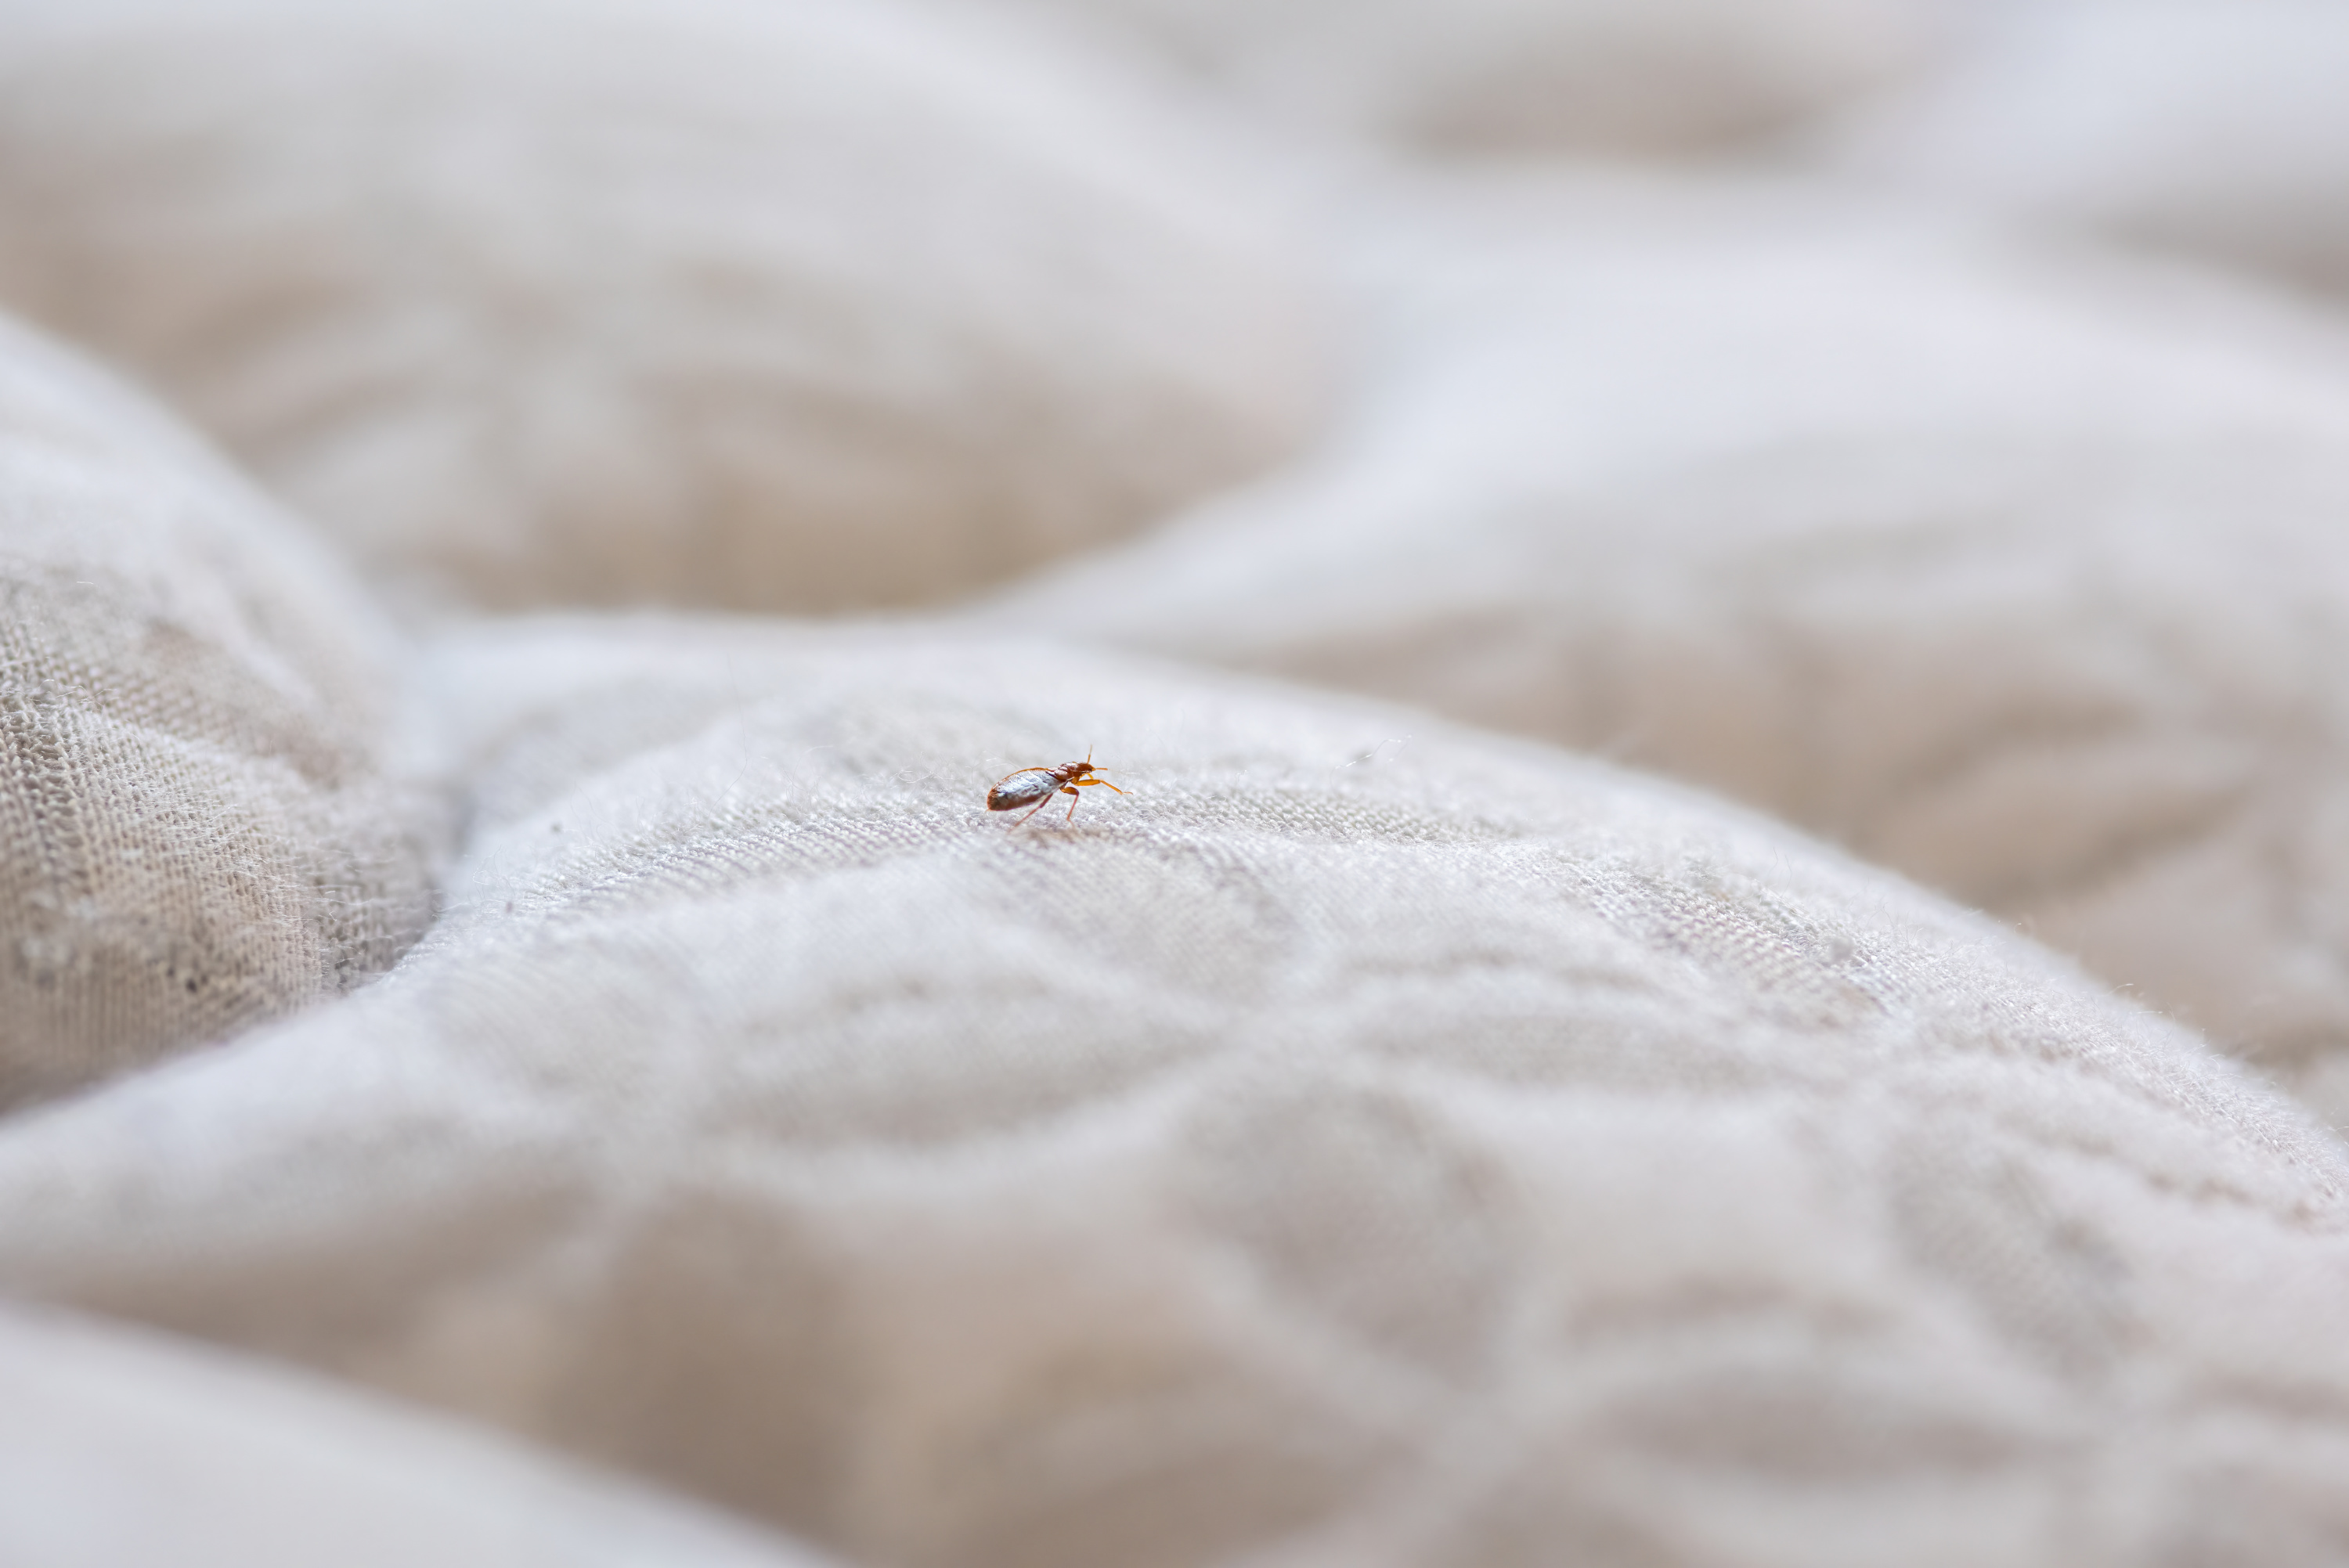 Traitement naturel des punaises de lit par pulvérisation